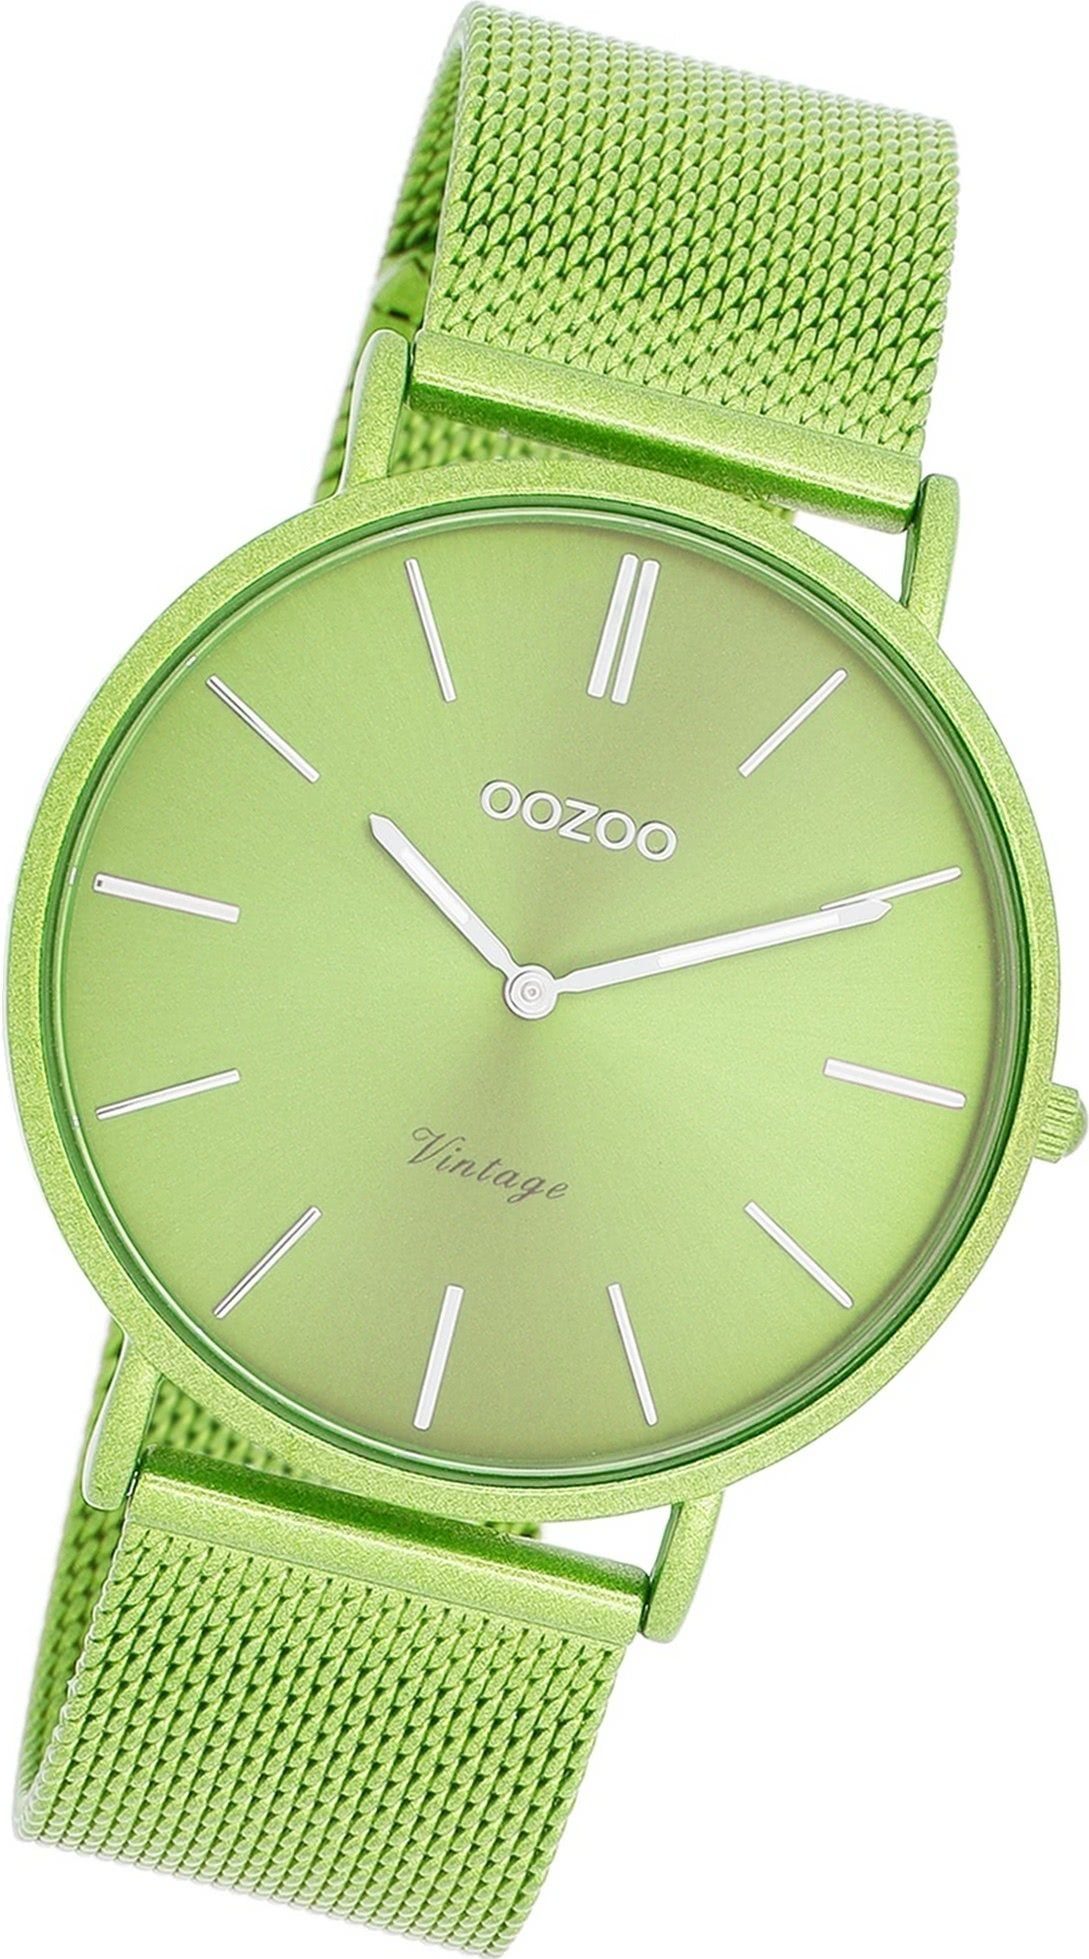 Edelstahlarmband (ca. Armbanduhr groß Damenuhr Oozoo grün, Analog, Quarzuhr OOZOO 40mm) rundes Vintage Gehäuse, Damen